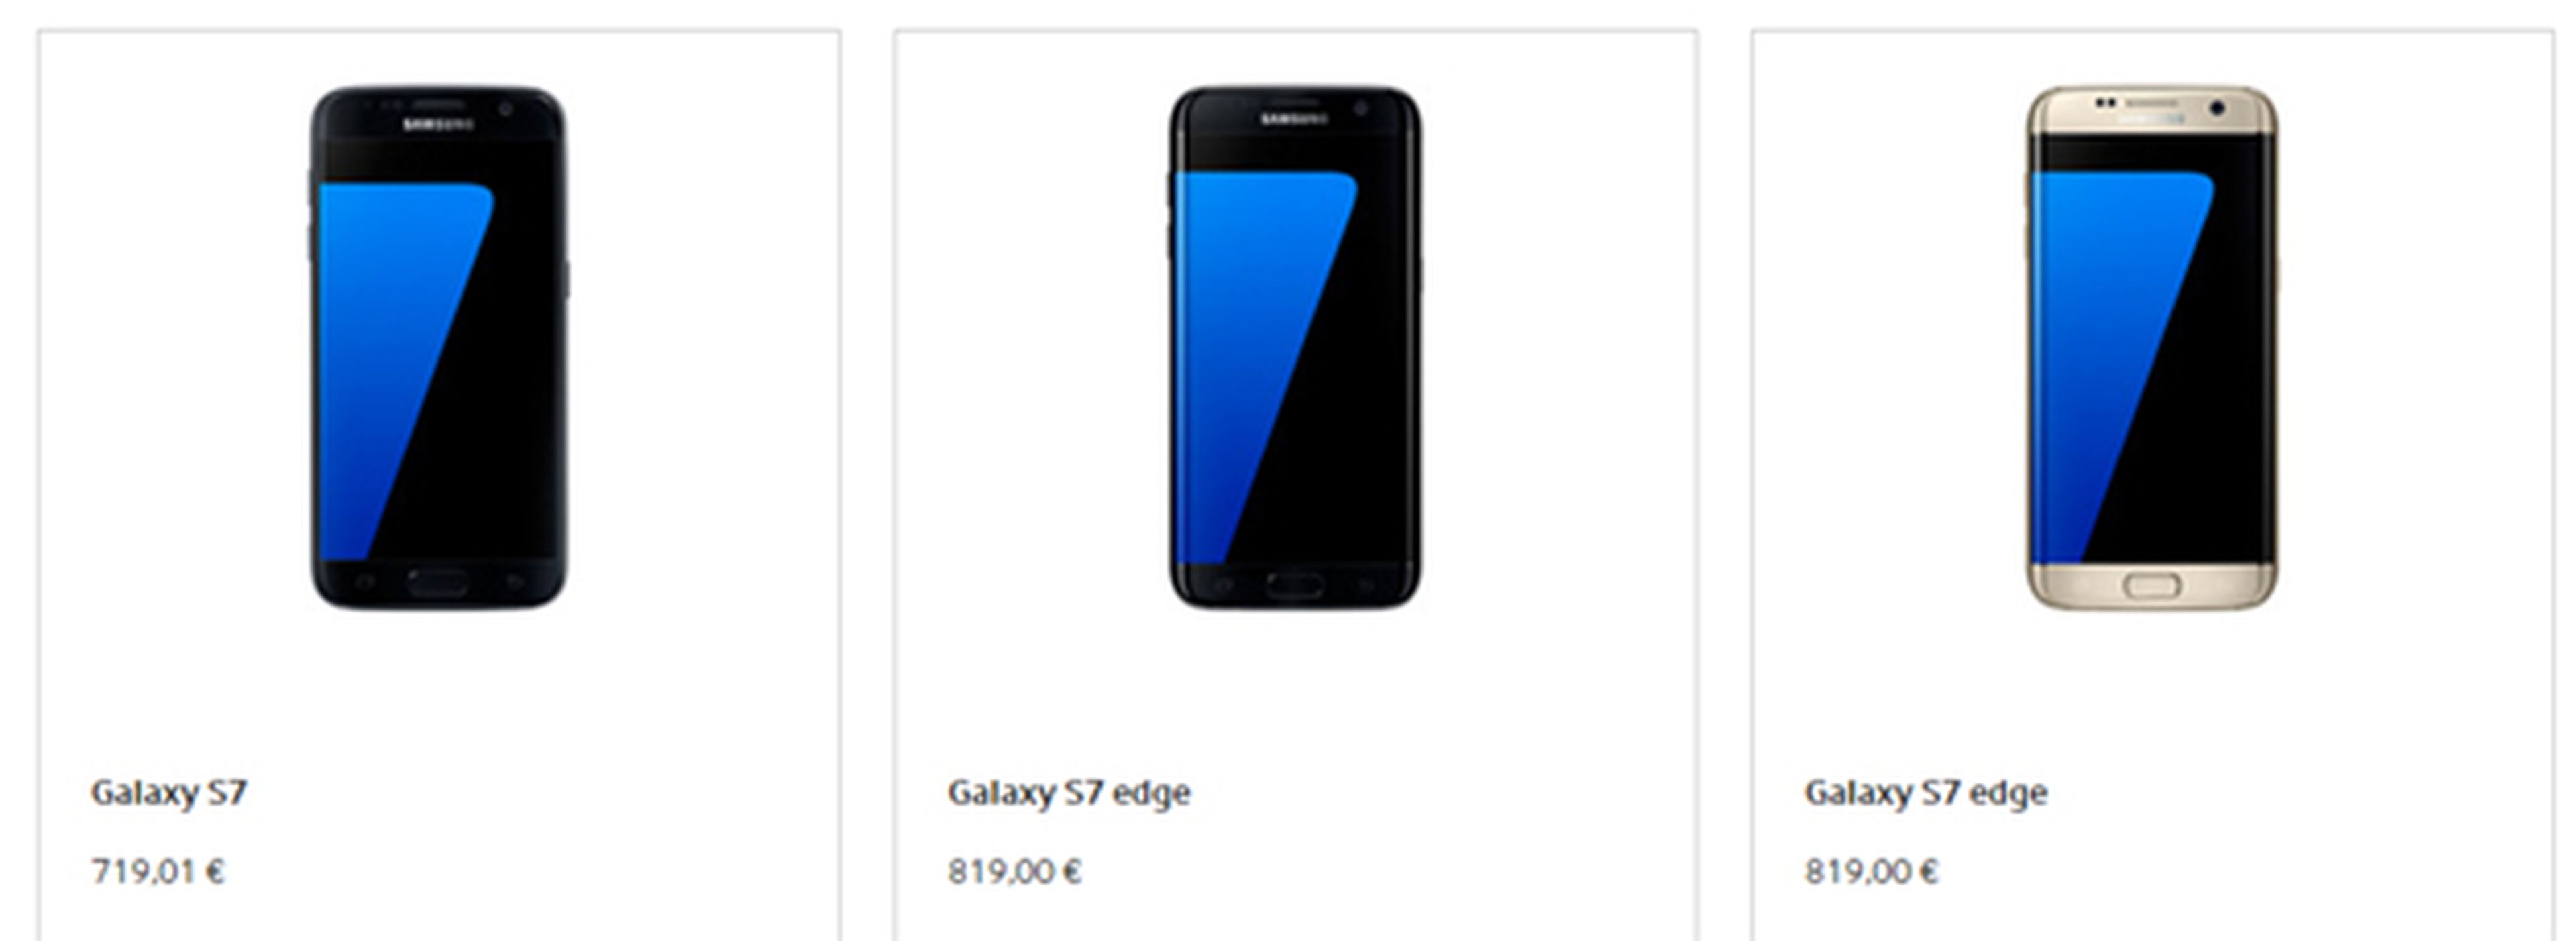 Comprar el Samsung Galaxy S7 en España, en la tienda online de Samsung